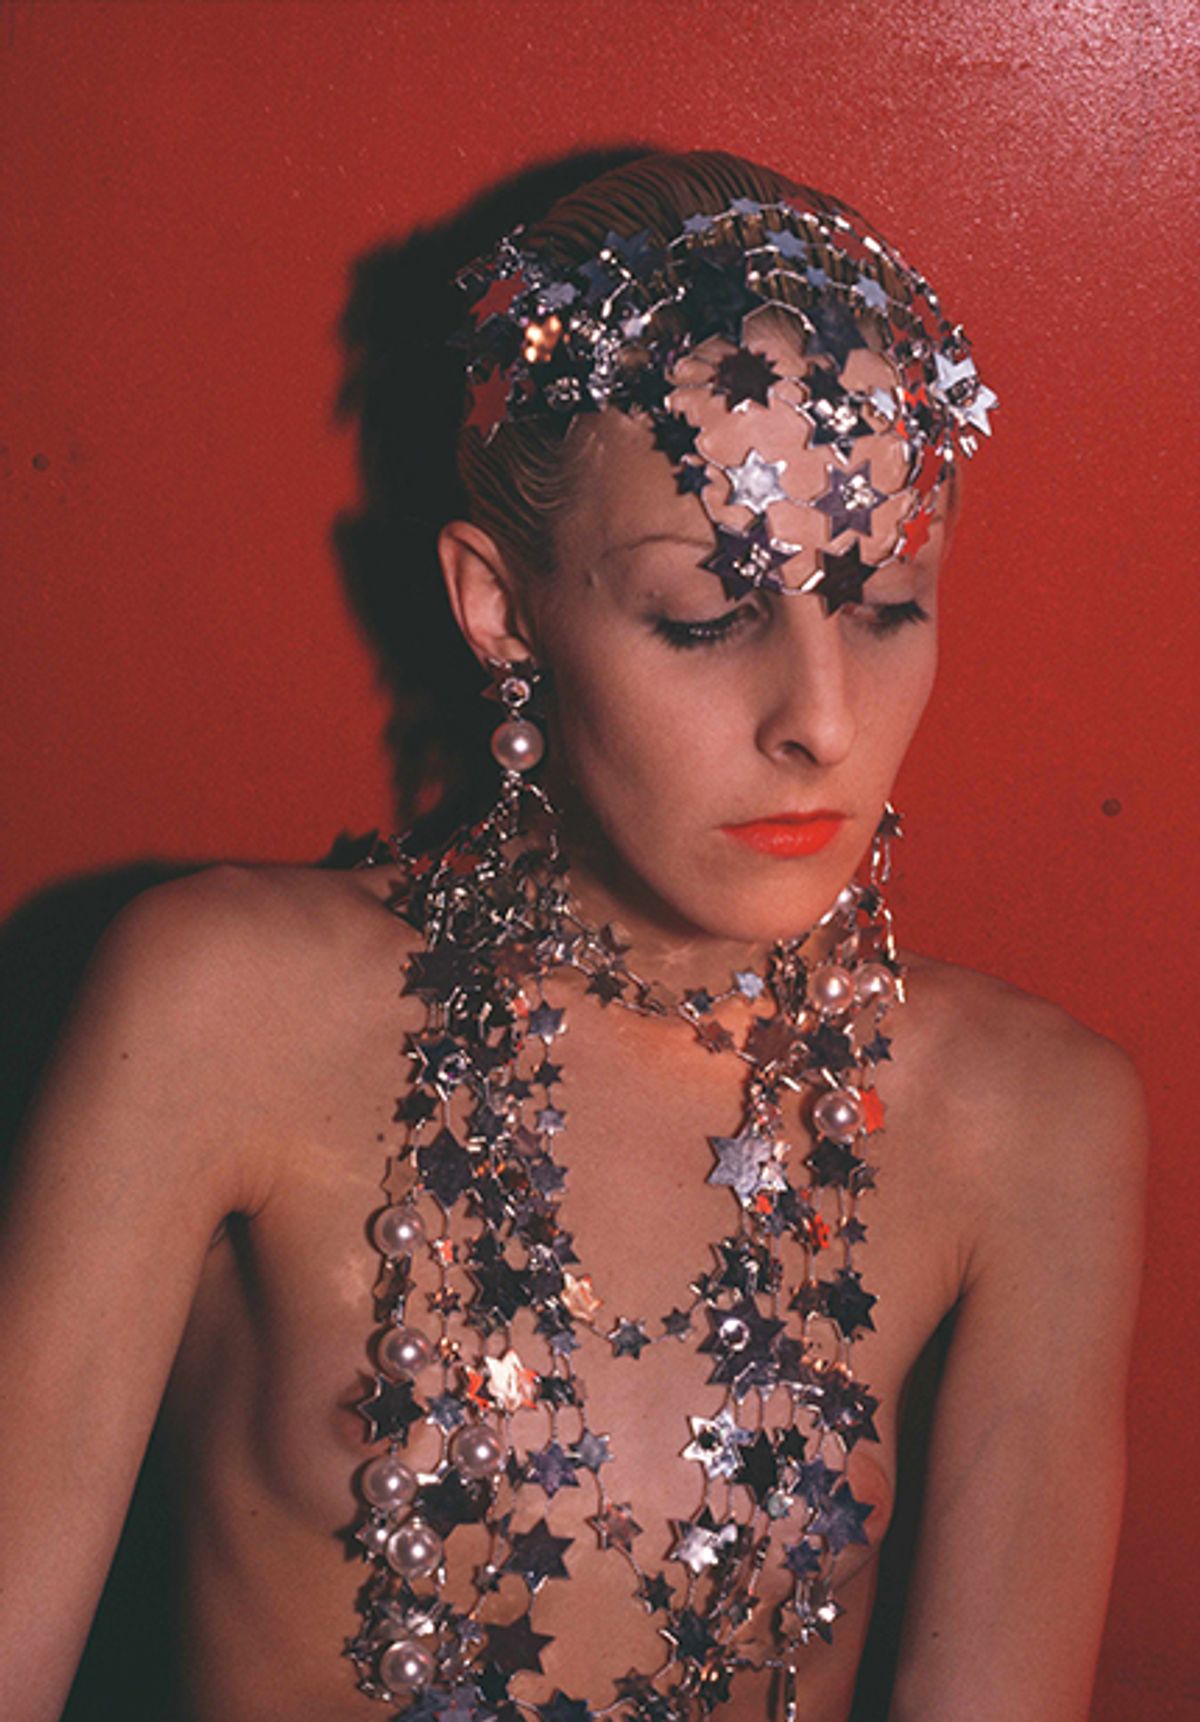 Greer Modeling Jewellery (1985) Nan Goldin